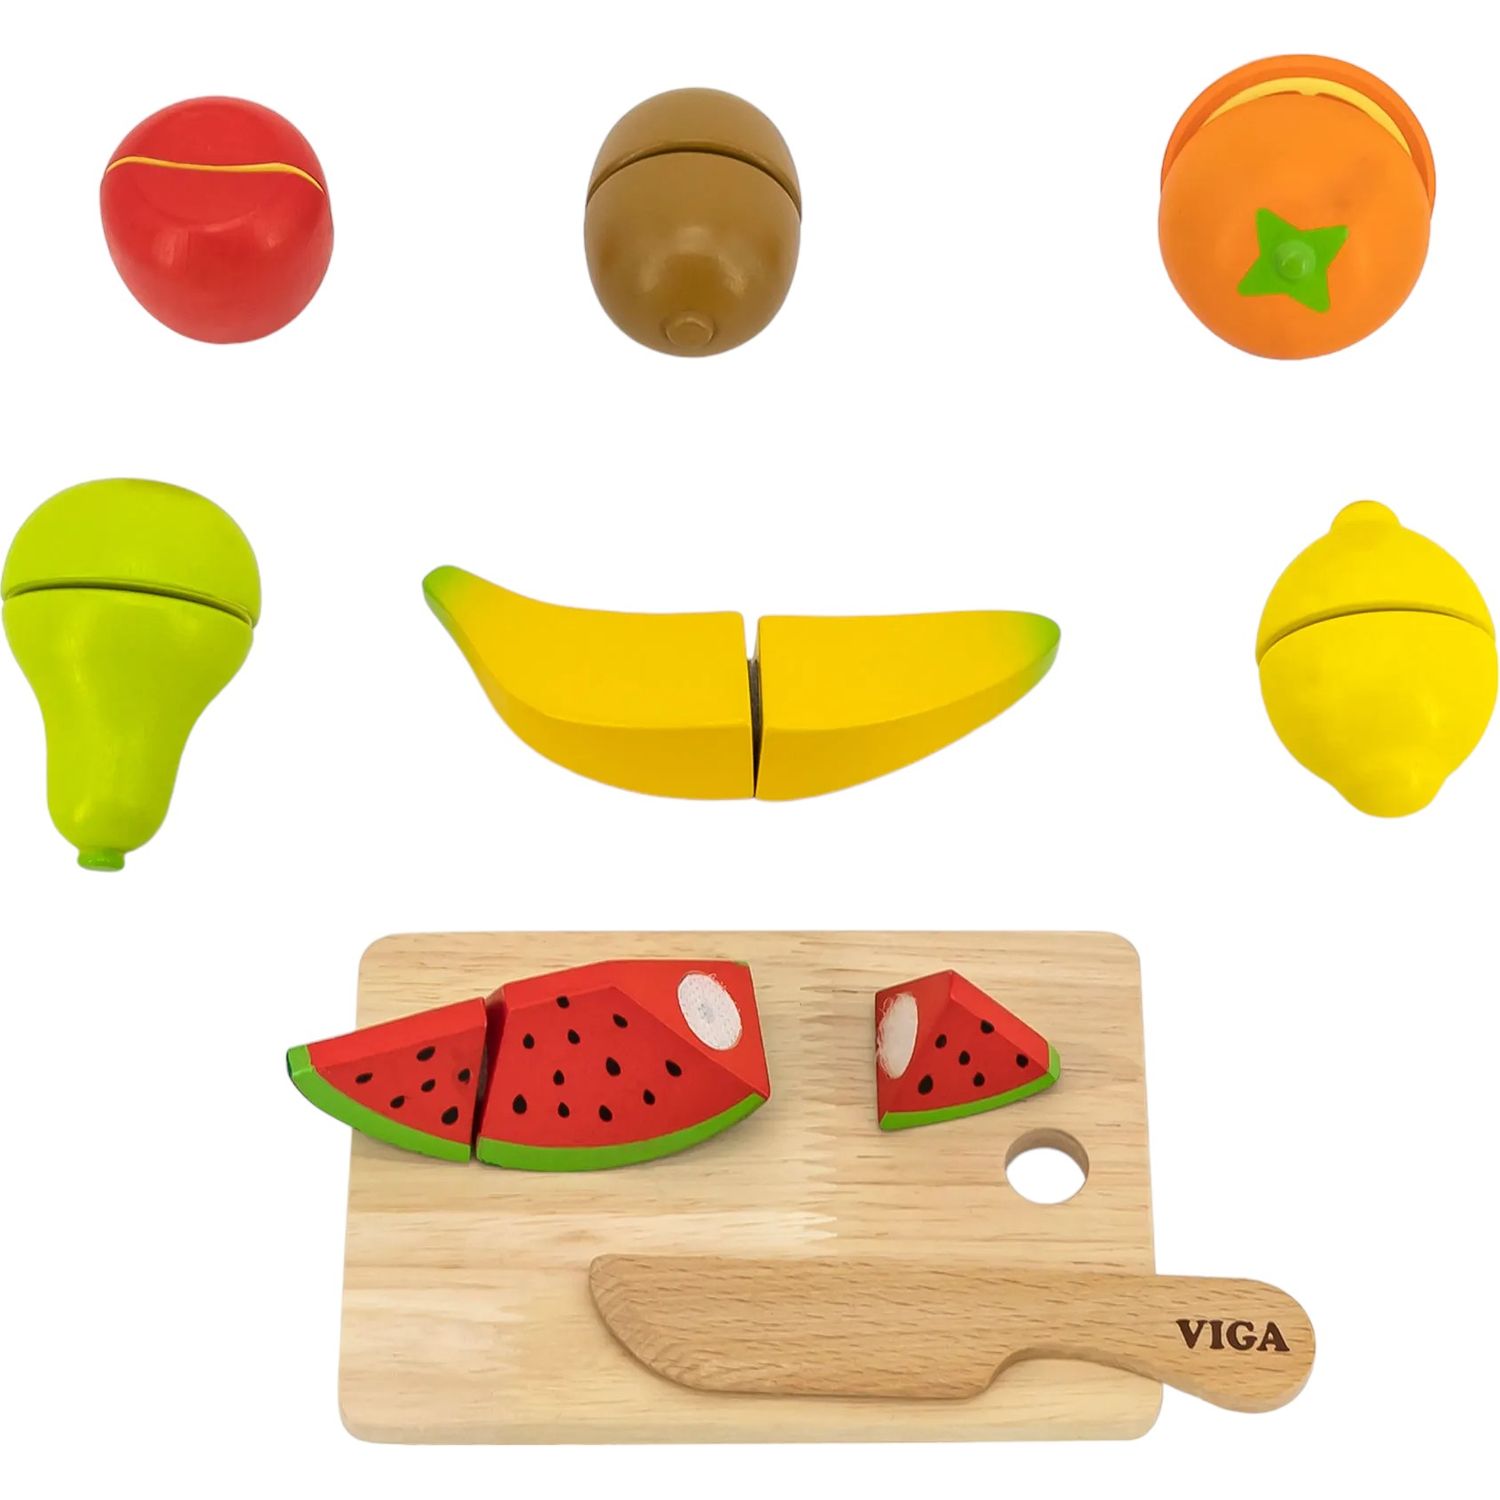 Игрушечные продукты Viga Toys Нарезанные фрукты из дерева (44539) - фото 1